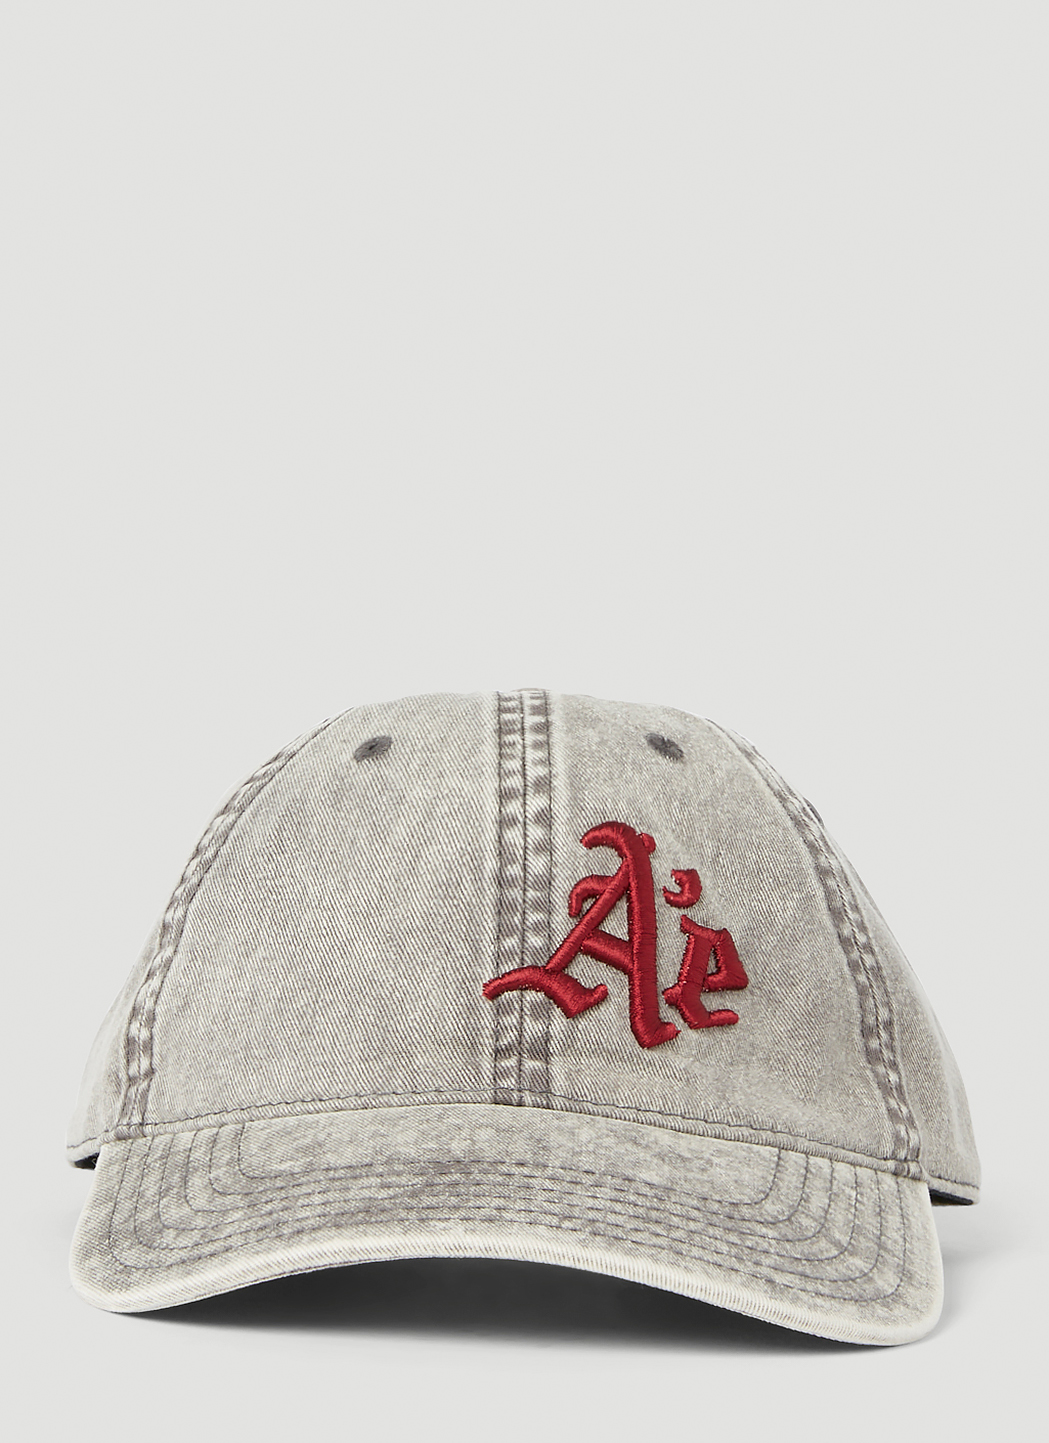 AE Baseball Cap